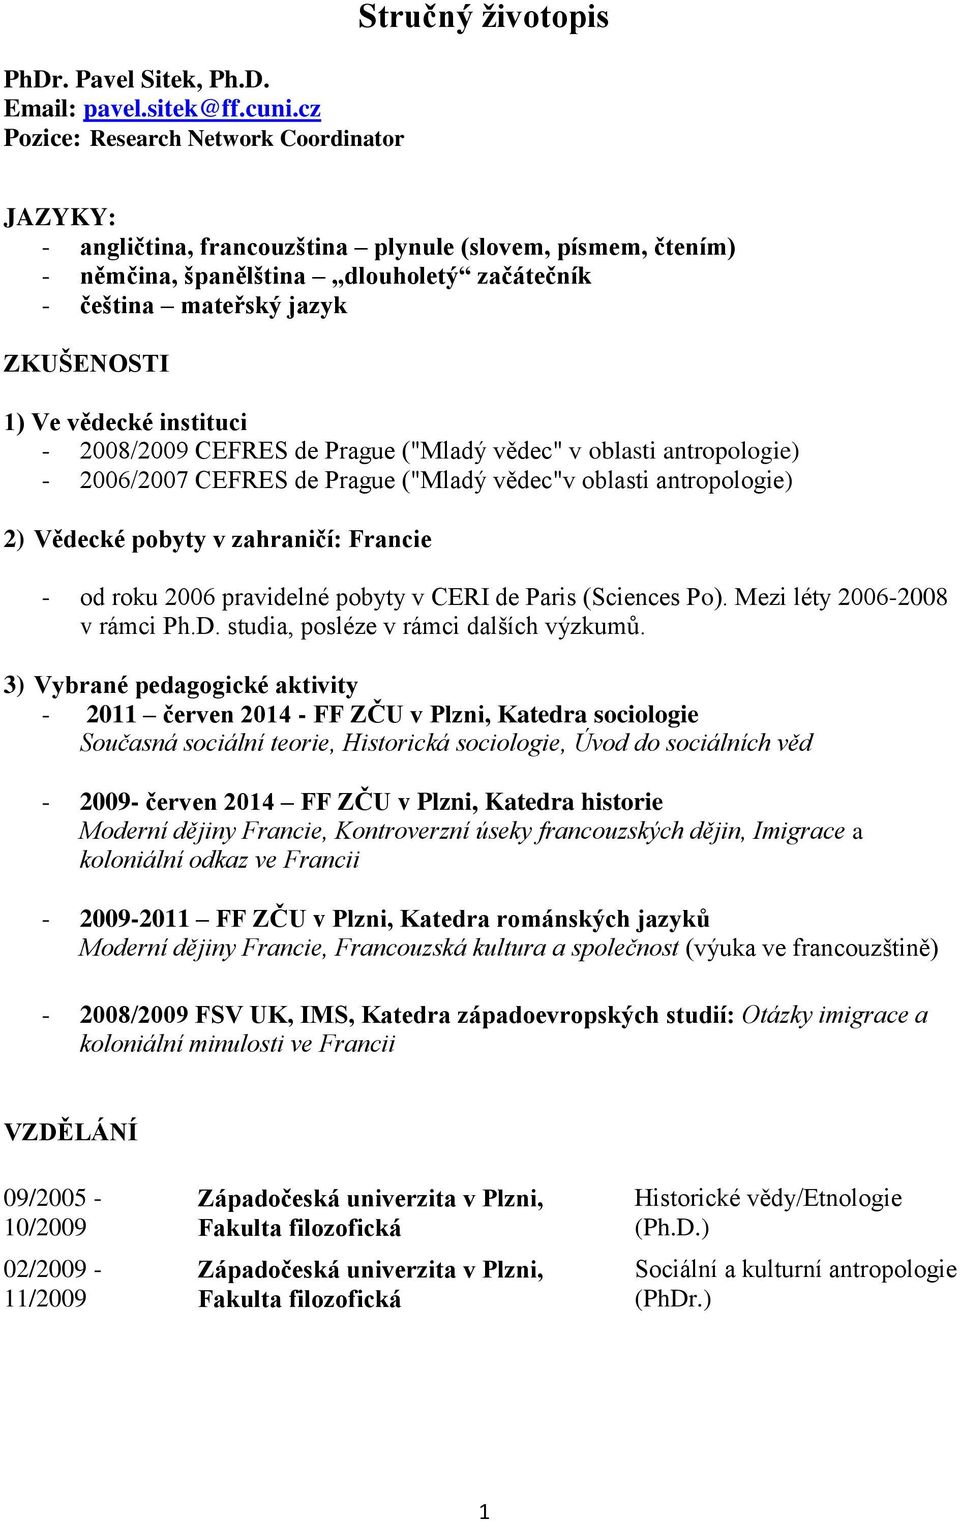 ZKUŠENOSTI 1) Ve vědecké instituci - 2008/2009 CEFRES de Prague ("Mladý vědec" v oblasti antropologie) - 2006/2007 CEFRES de Prague ("Mladý vědec"v oblasti antropologie) 2) Vědecké pobyty v